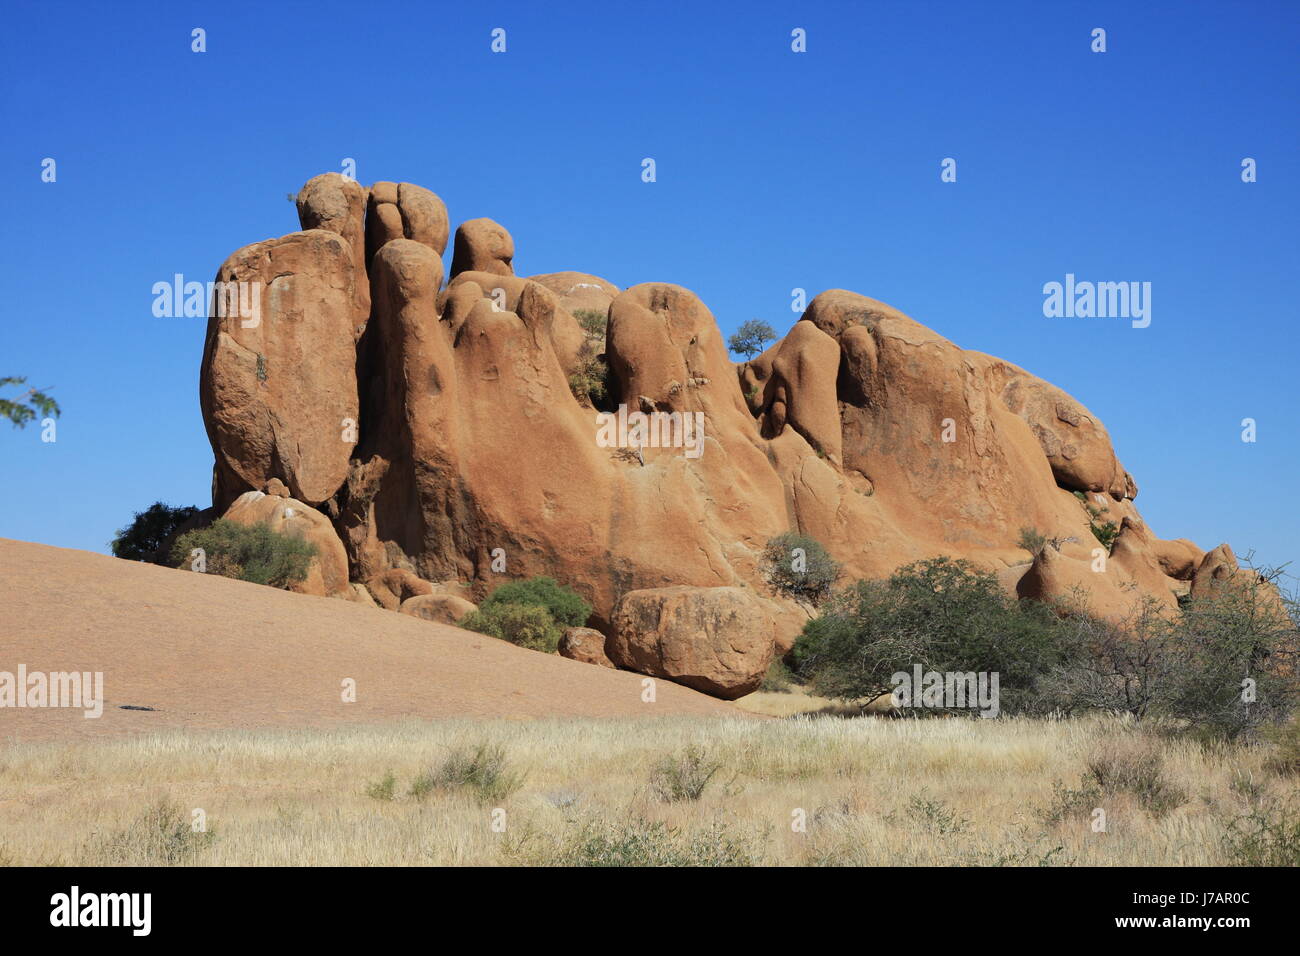 La Namibie Afrique désert désert de pierre bleu montagne kenya savane animaux Banque D'Images